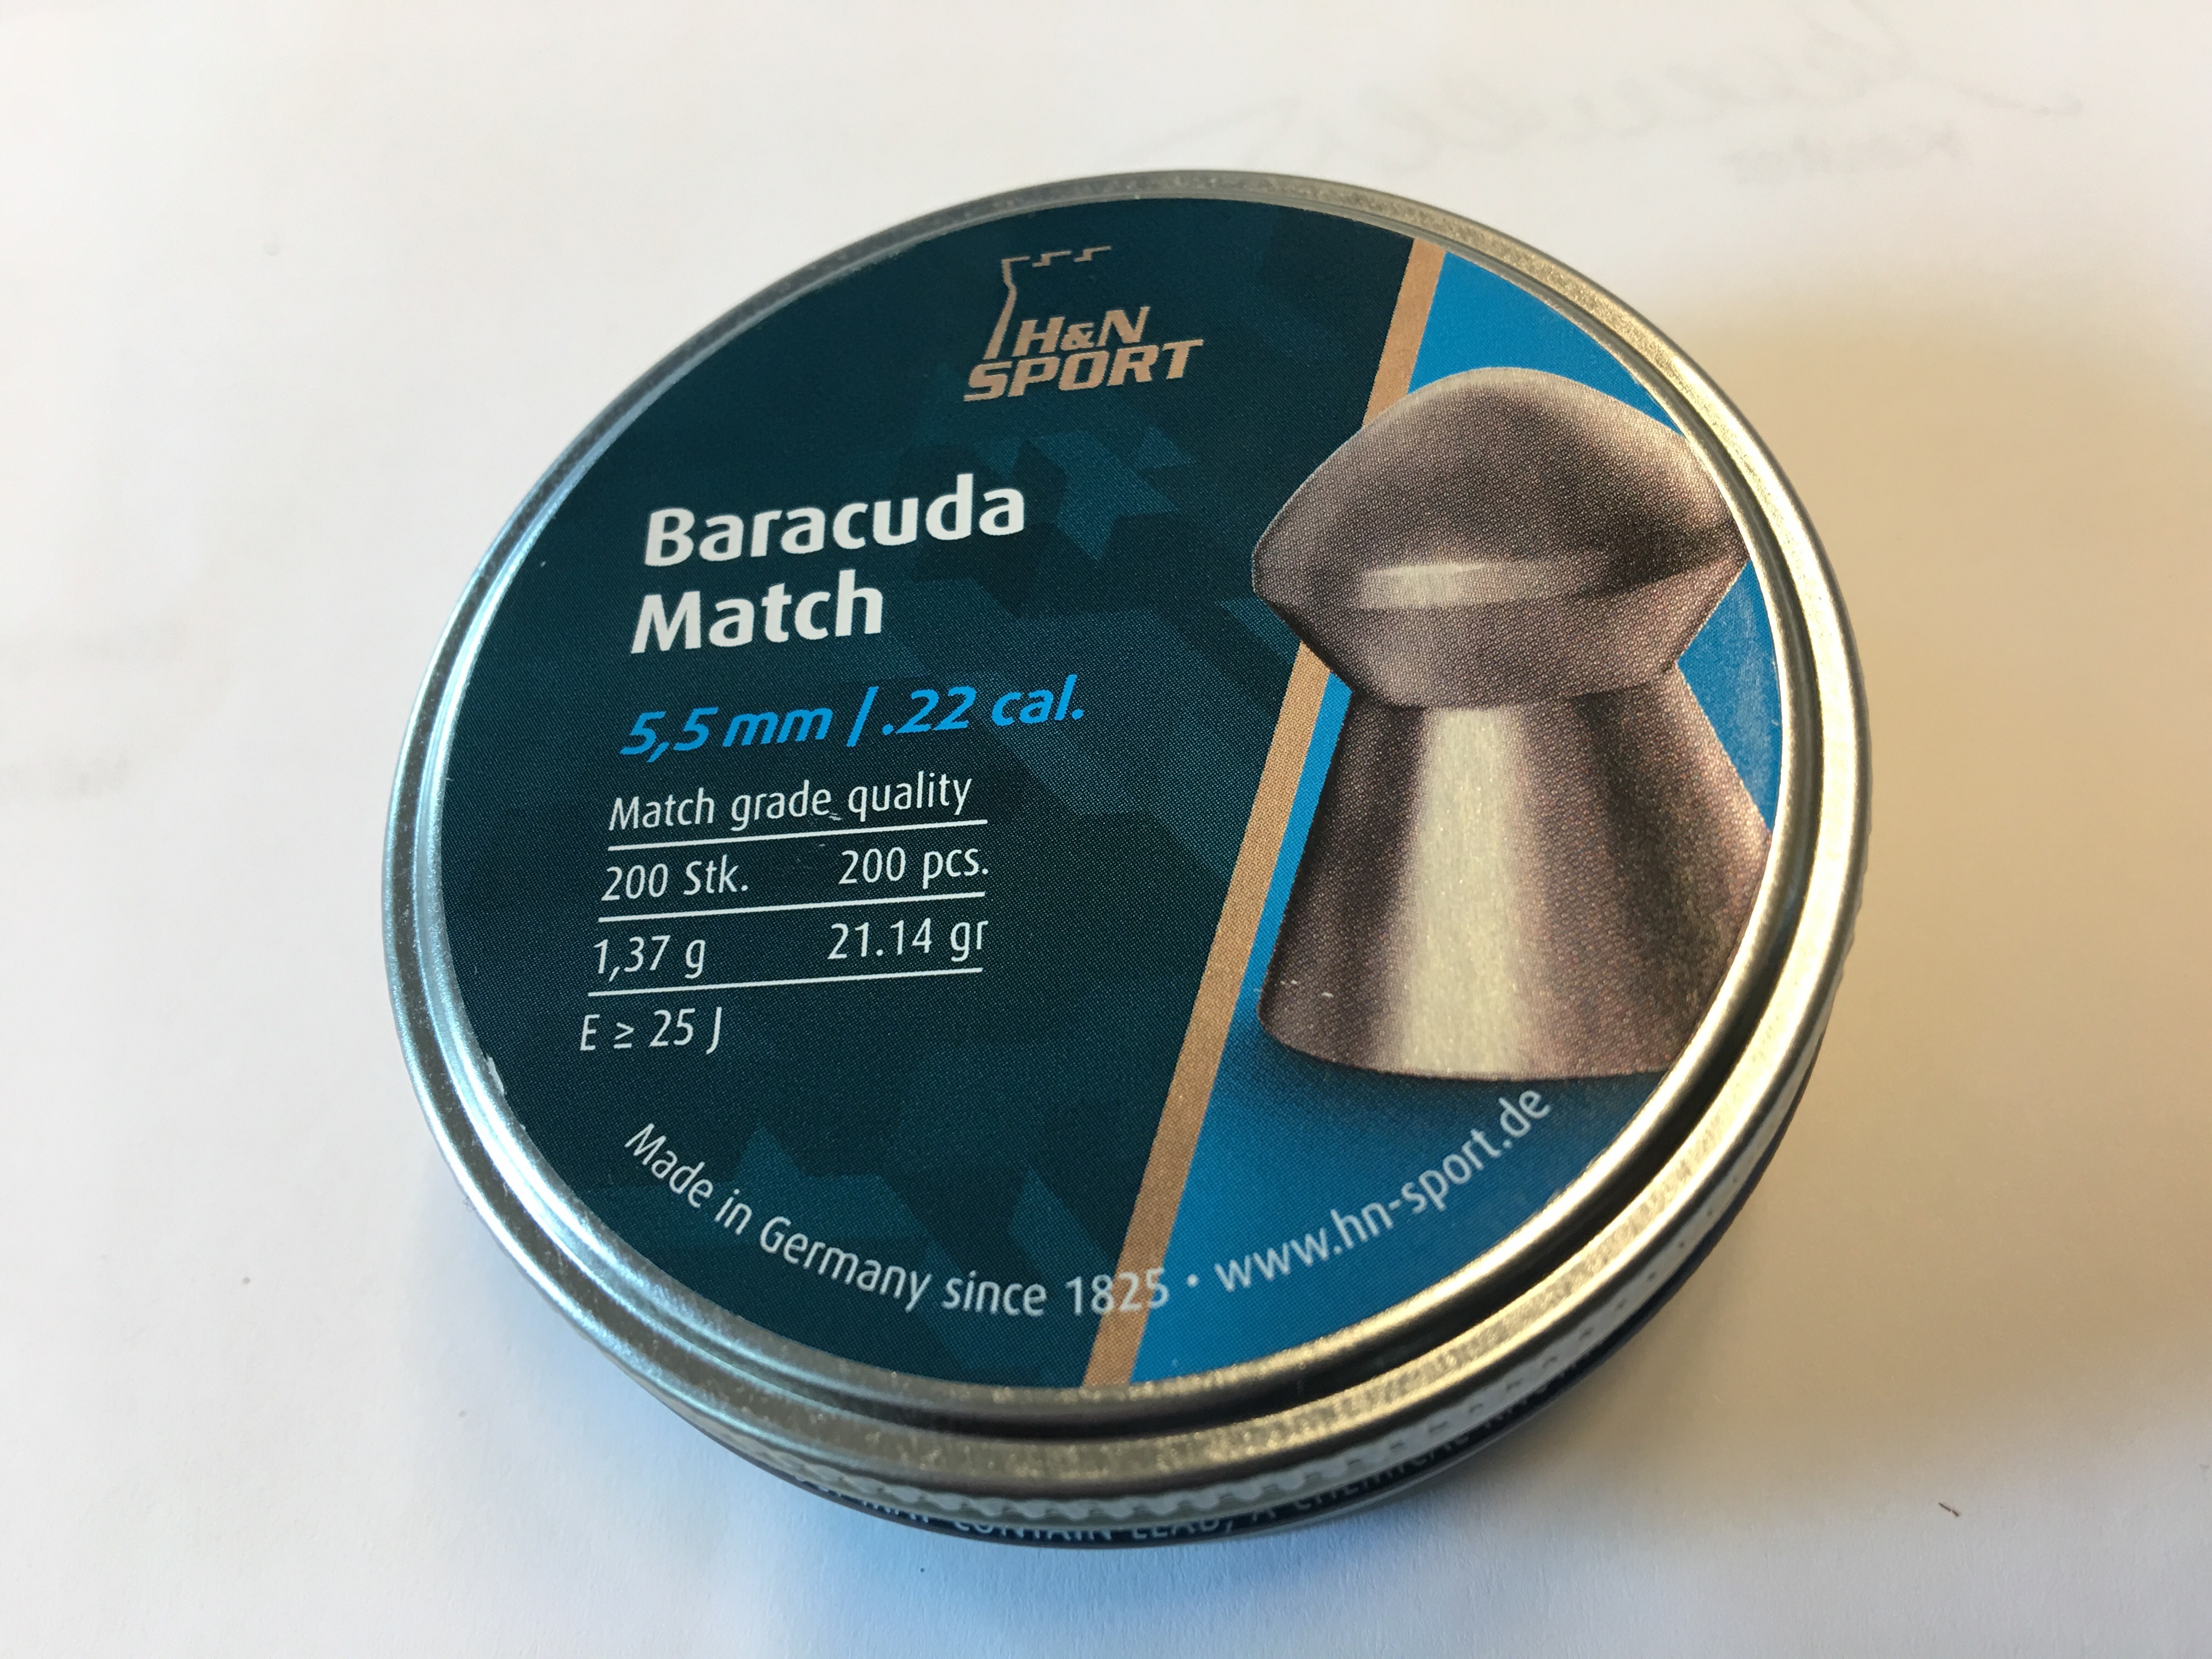 H&N Baracuda Match 5,51mm